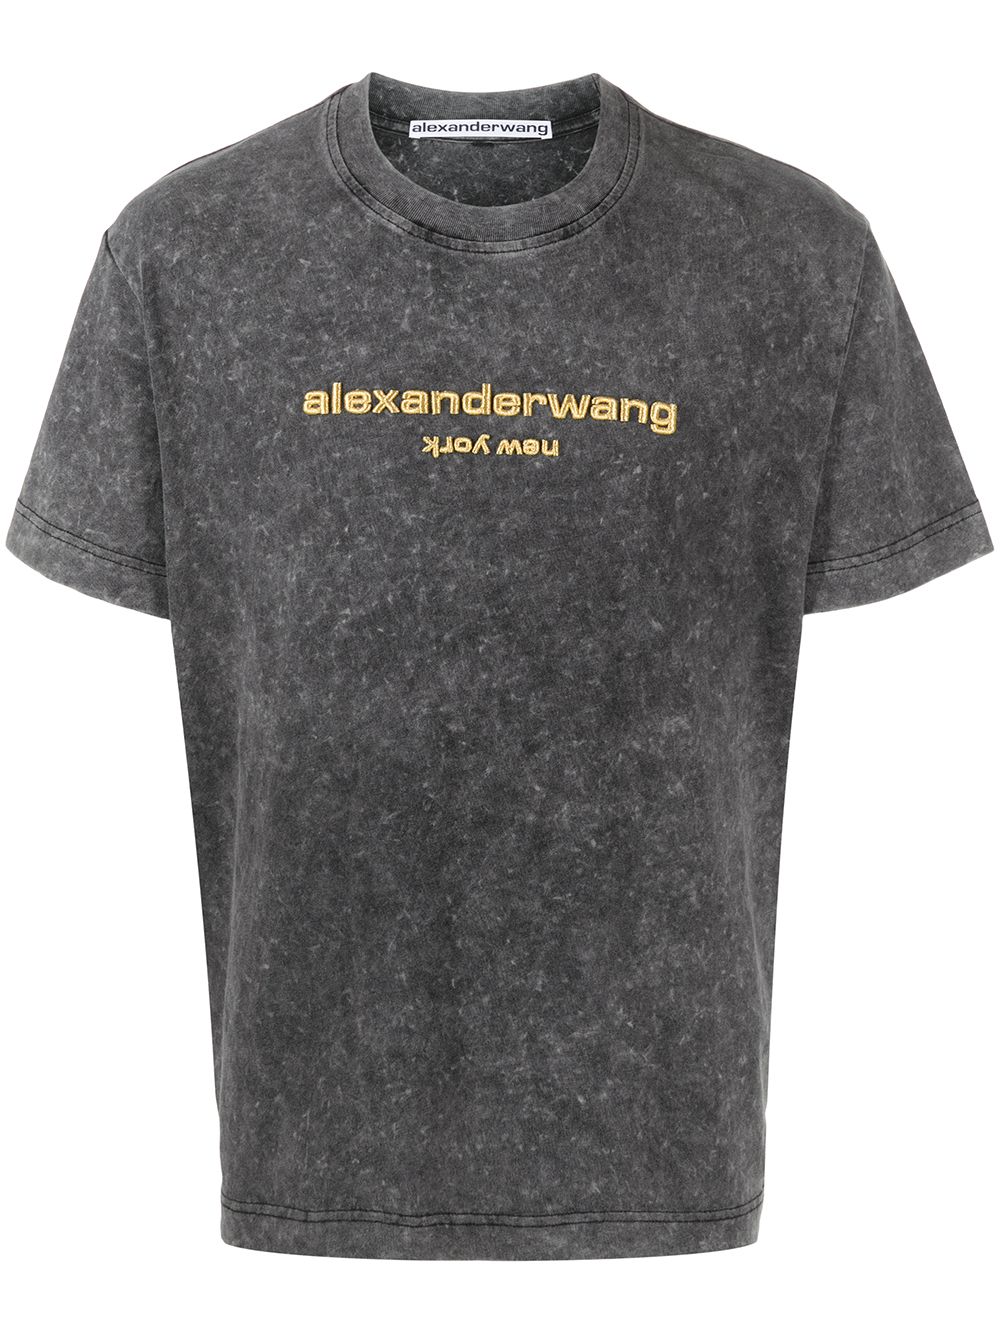 фото Alexander wang футболка с логотипом